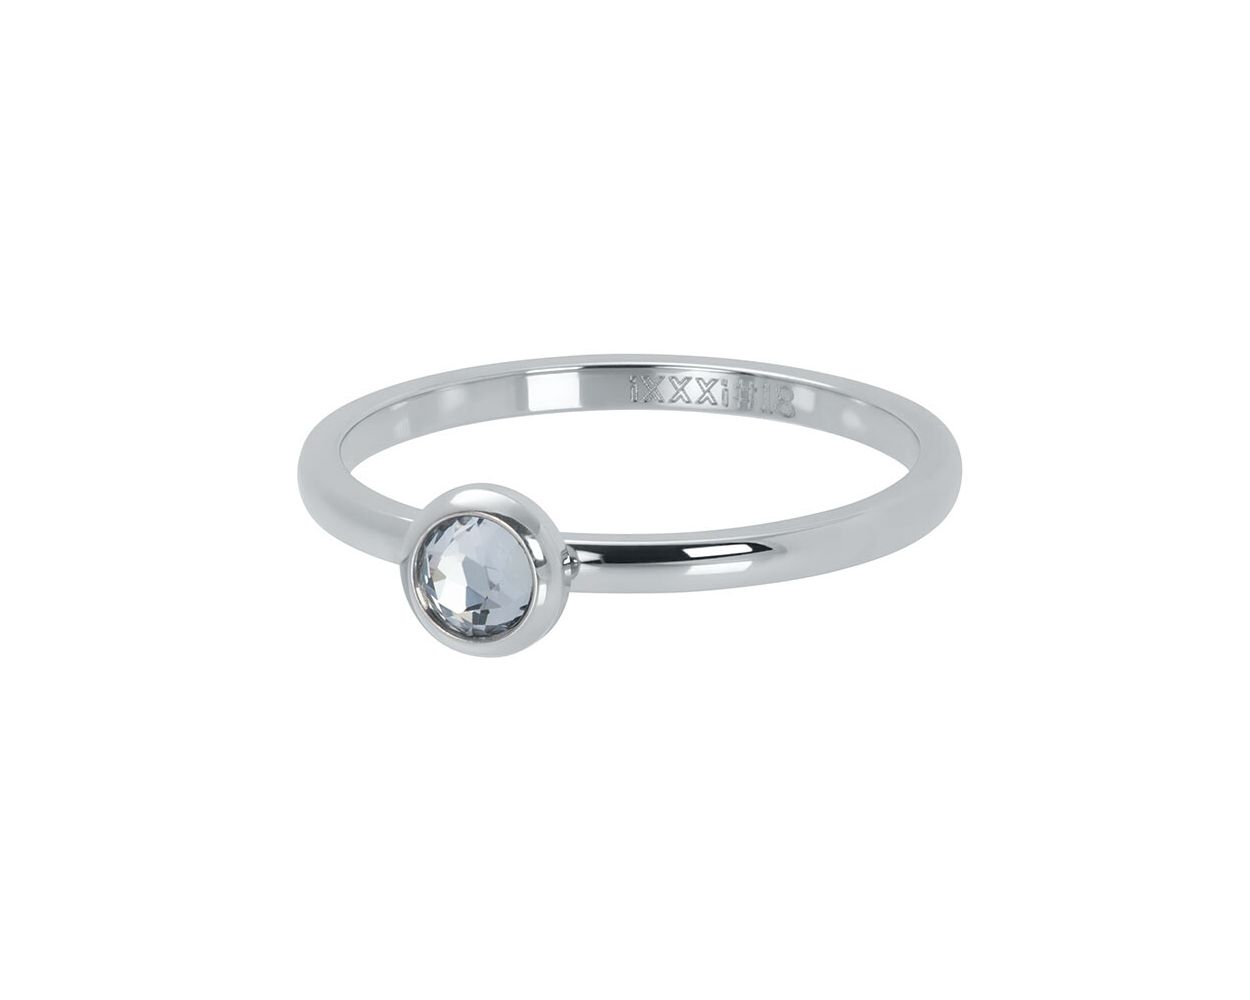 ixxxi ring zirconia white silver R4106-3